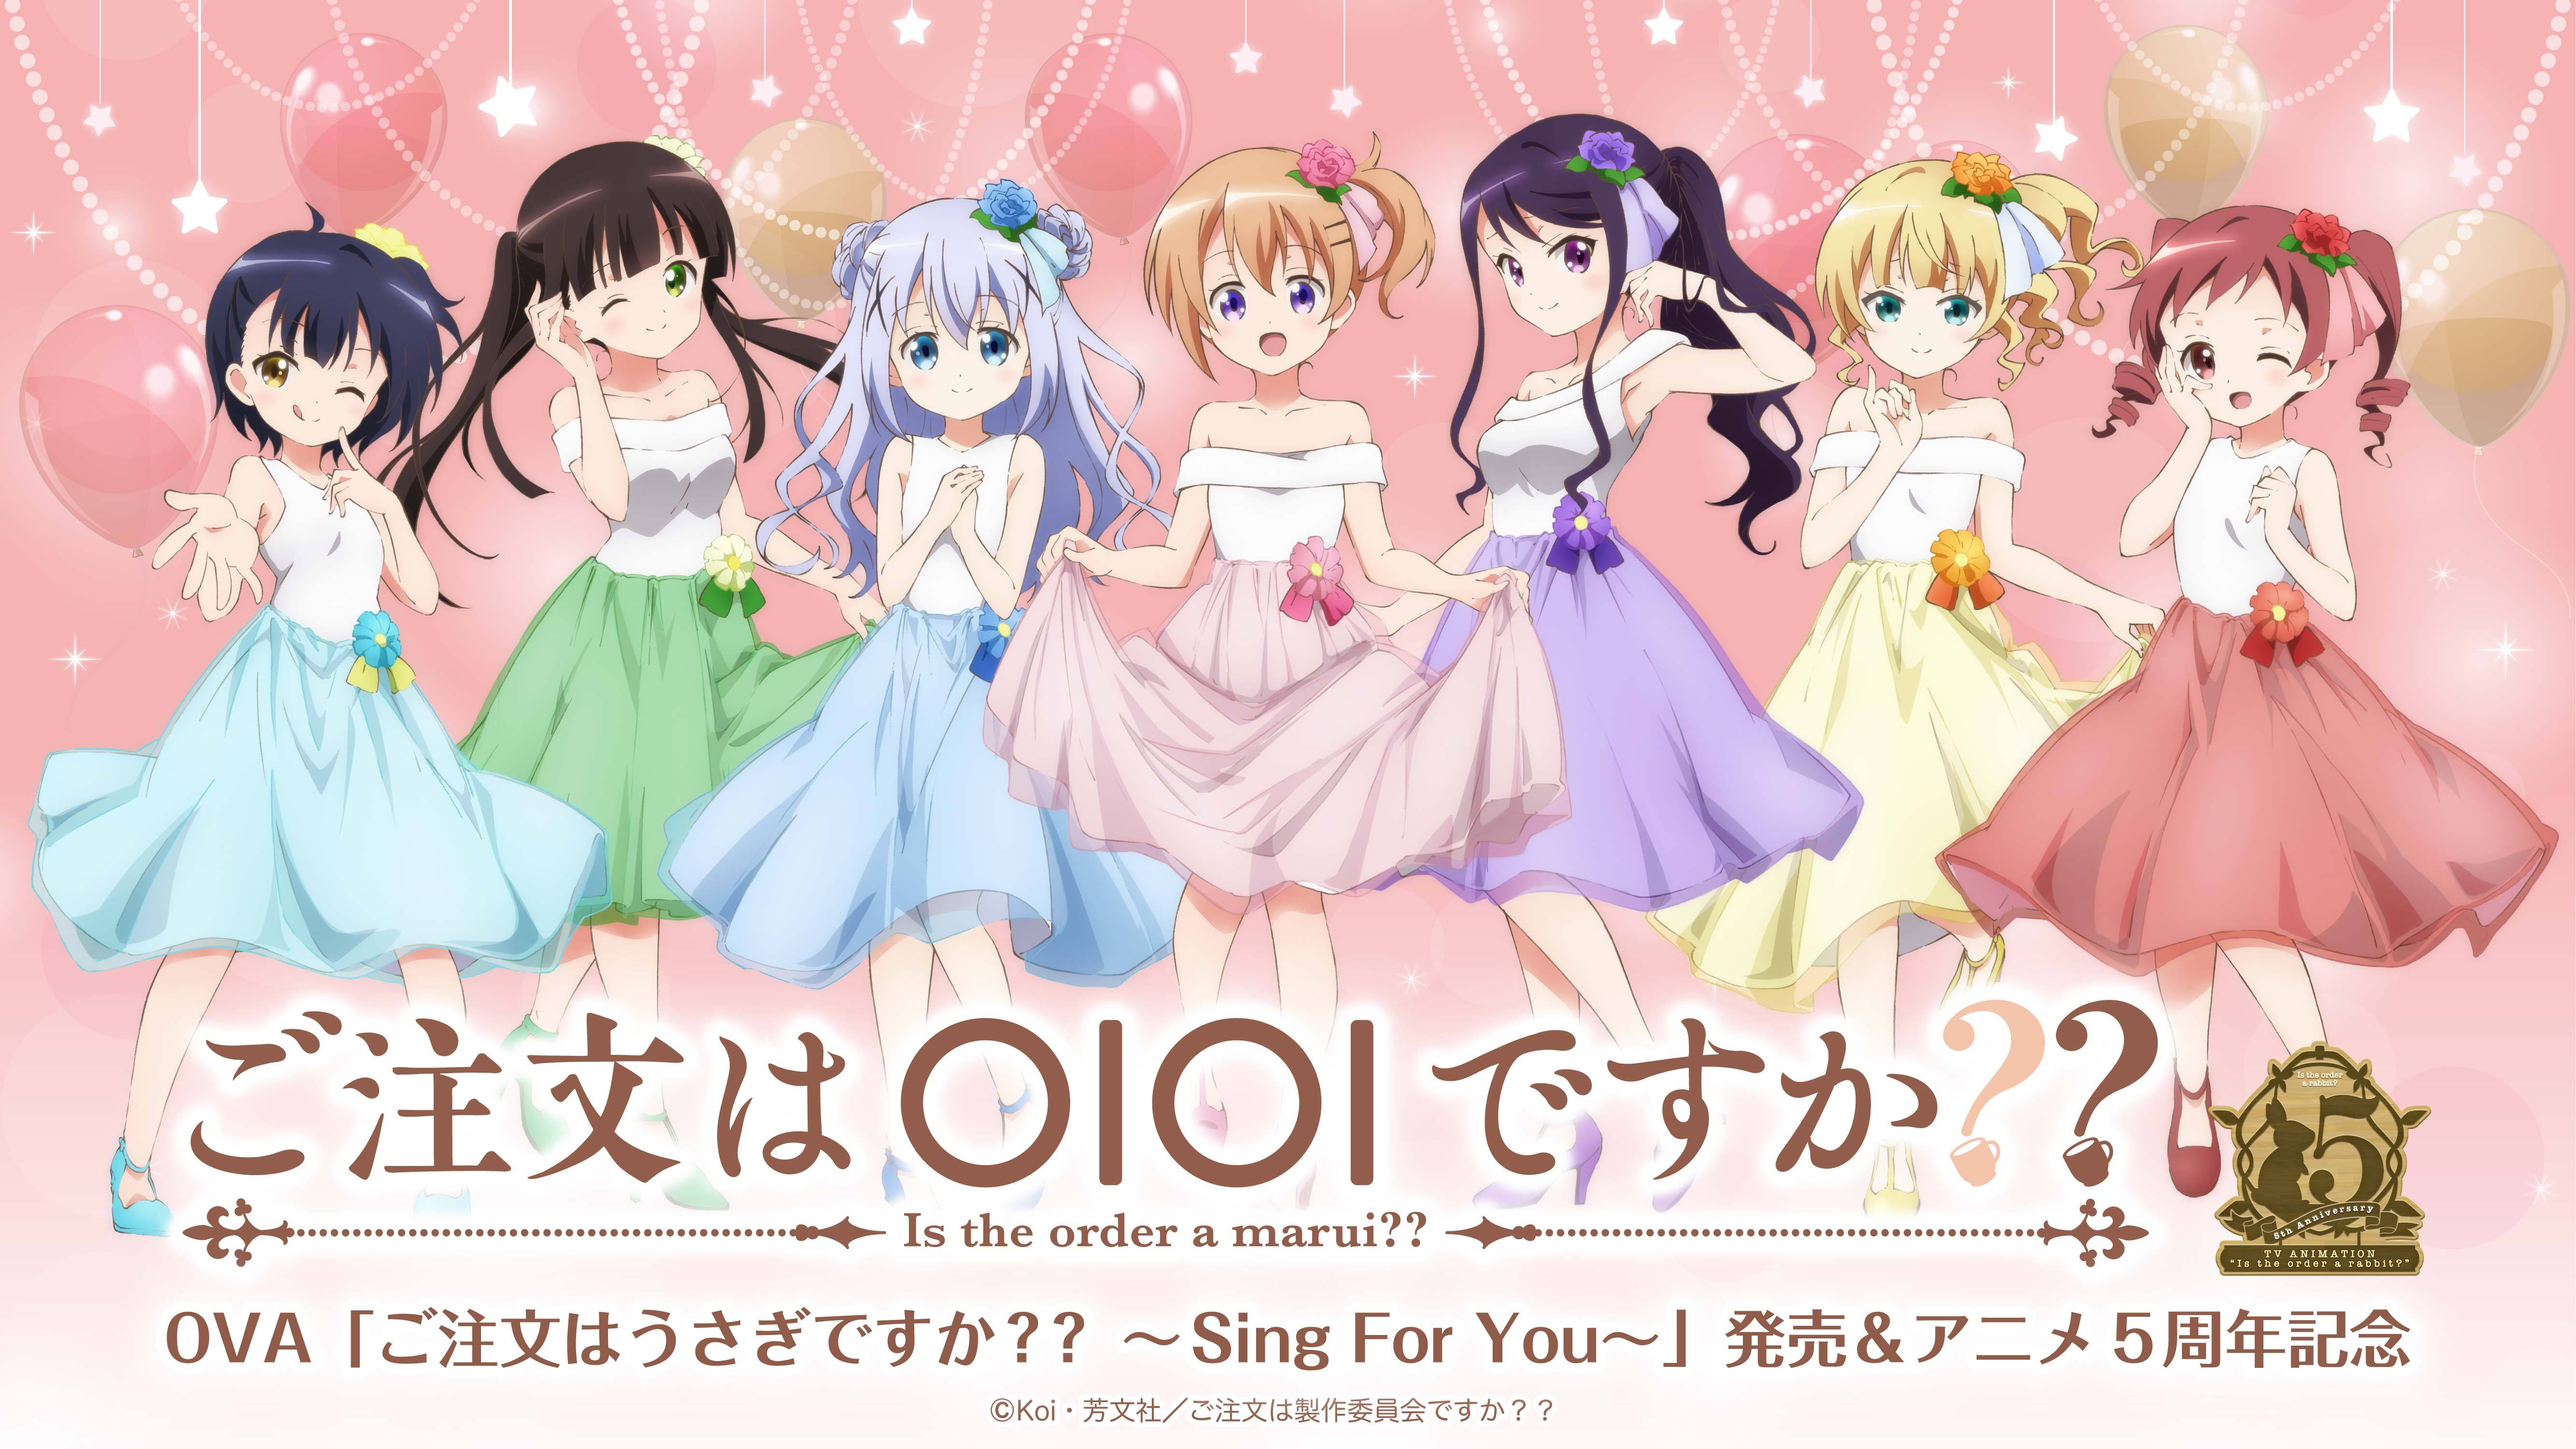 Character song - GochiUsa / Kafuu Chino (ご注文はうさぎですか?? Selection of April  Fools' Day)